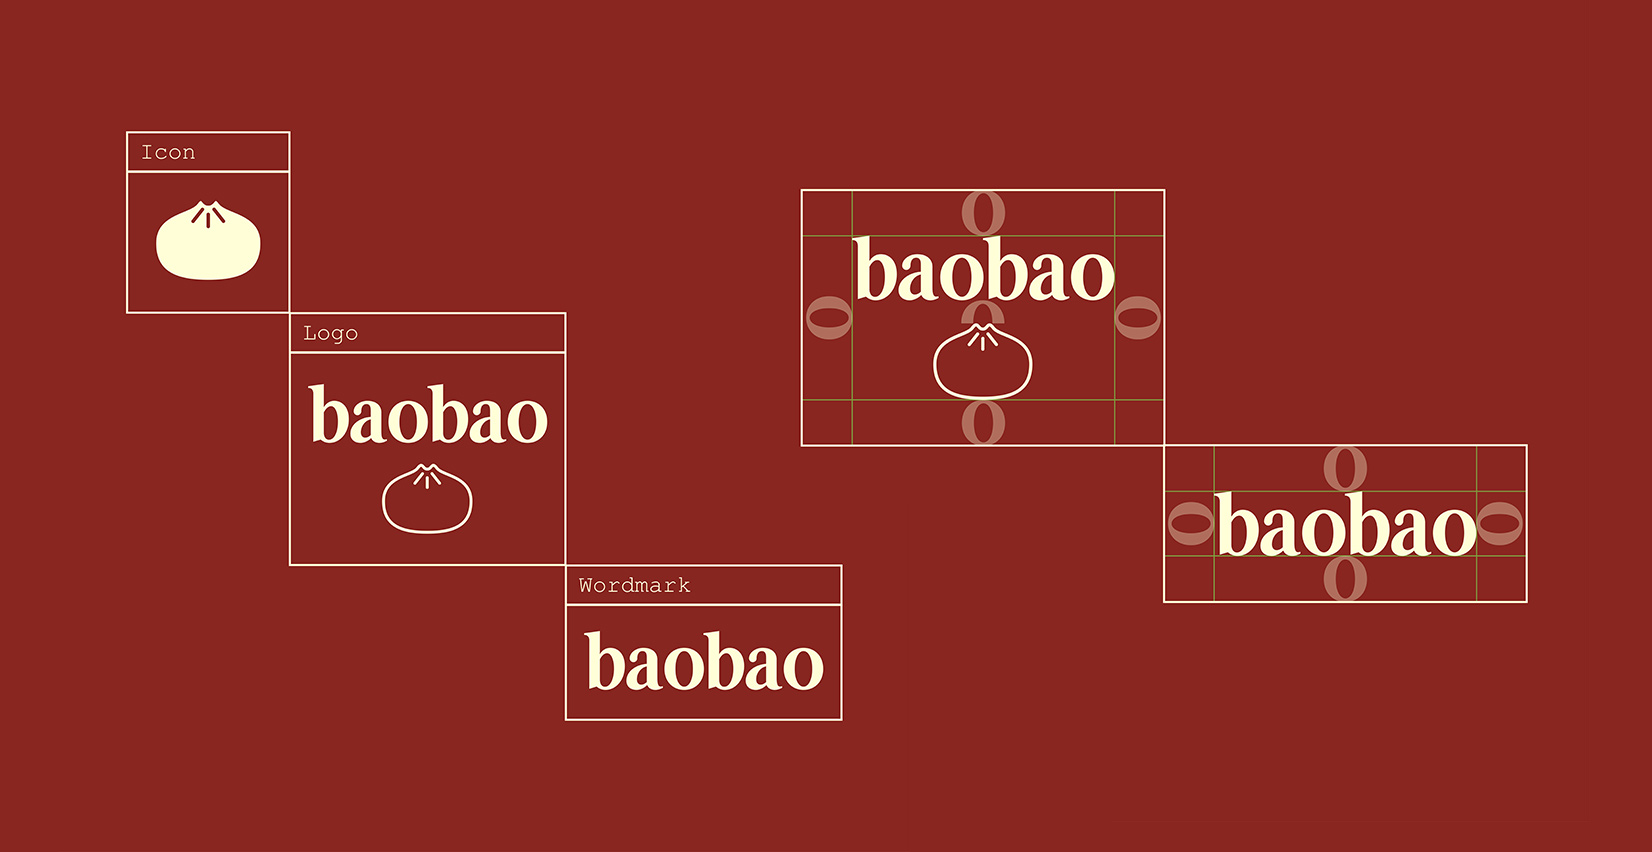 Baobao logo rules.